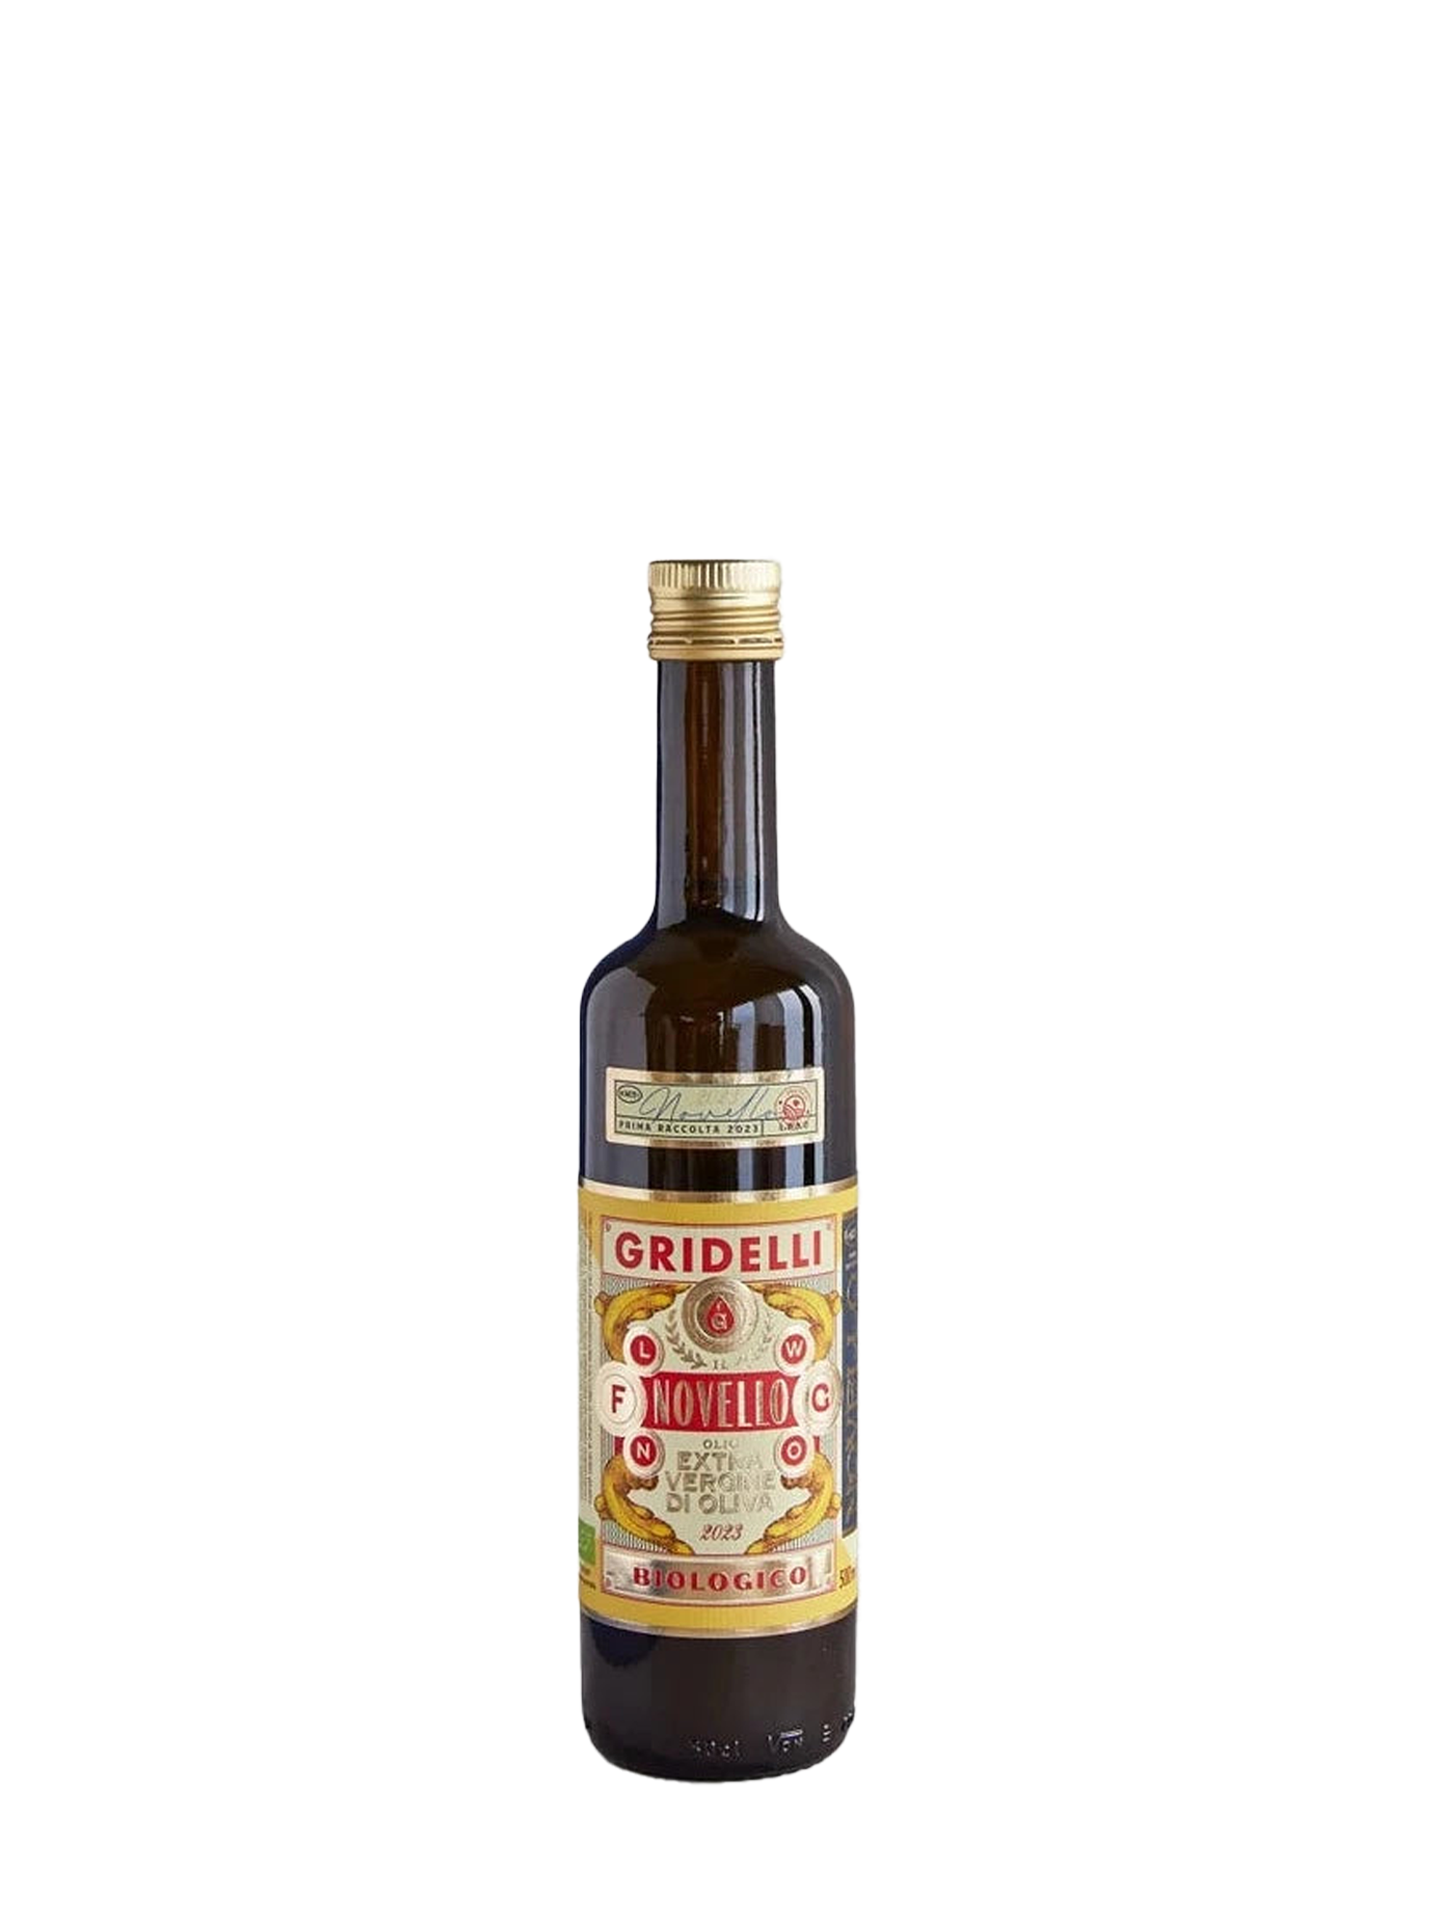 Gridelli: Extra Virgin Olive Oil Il Novello (500 ml)